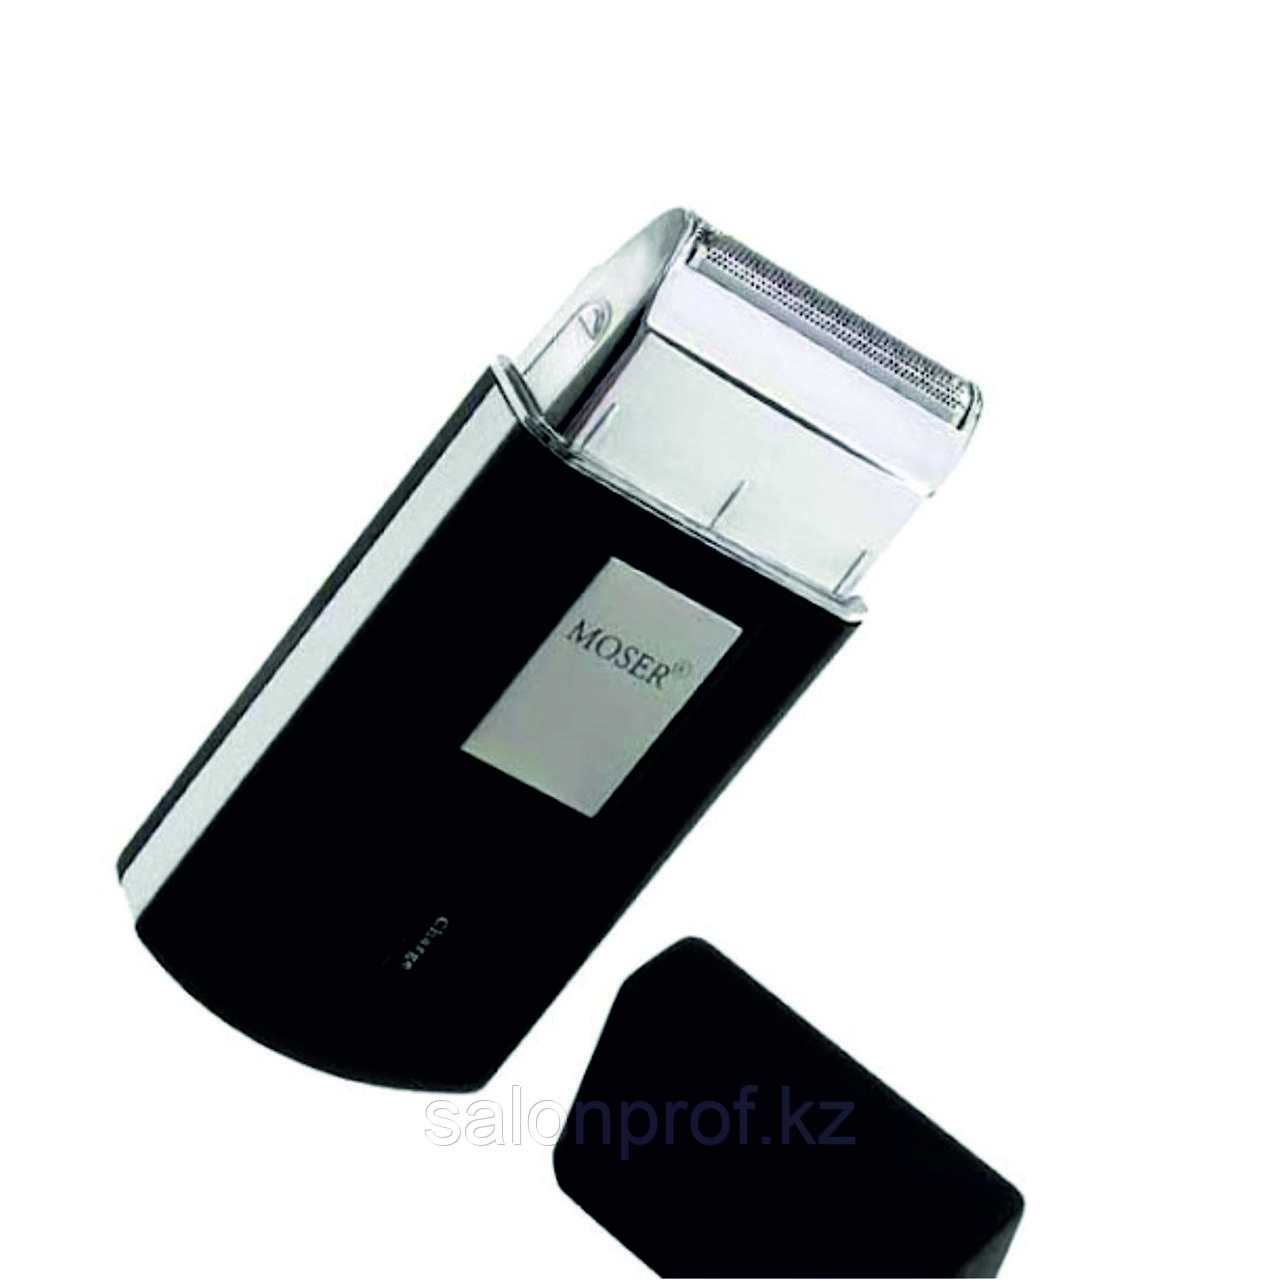 Мини-шейвер Moser Mobile Shaver для финишной доводки, высота среза 0,1мм, аккум. (черный) №07760